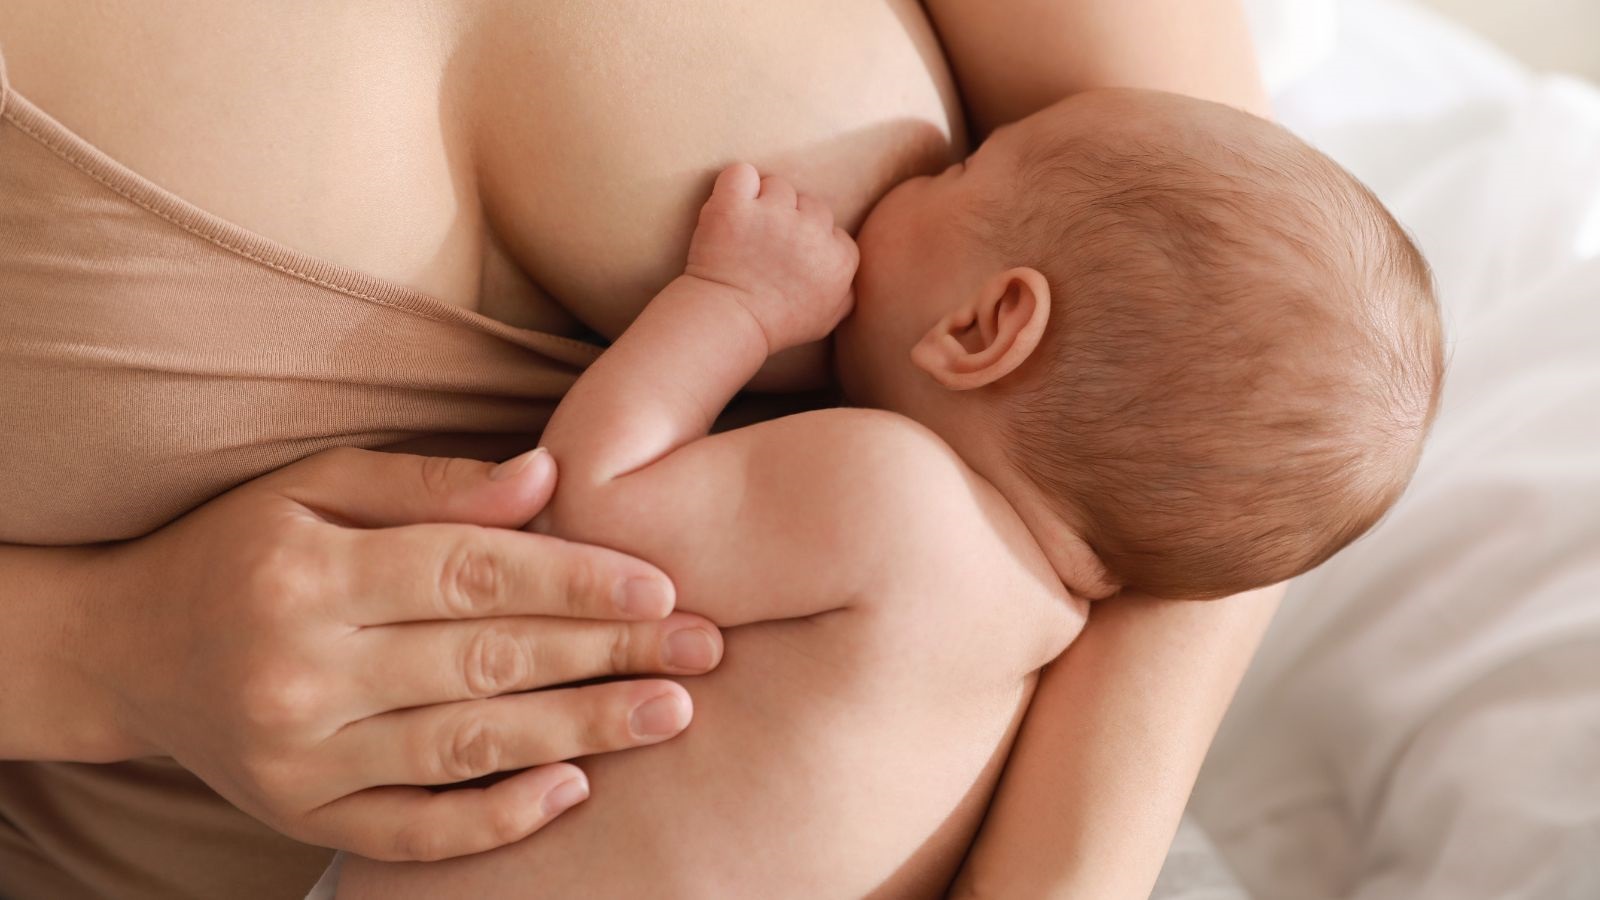 a woman breastfeeding